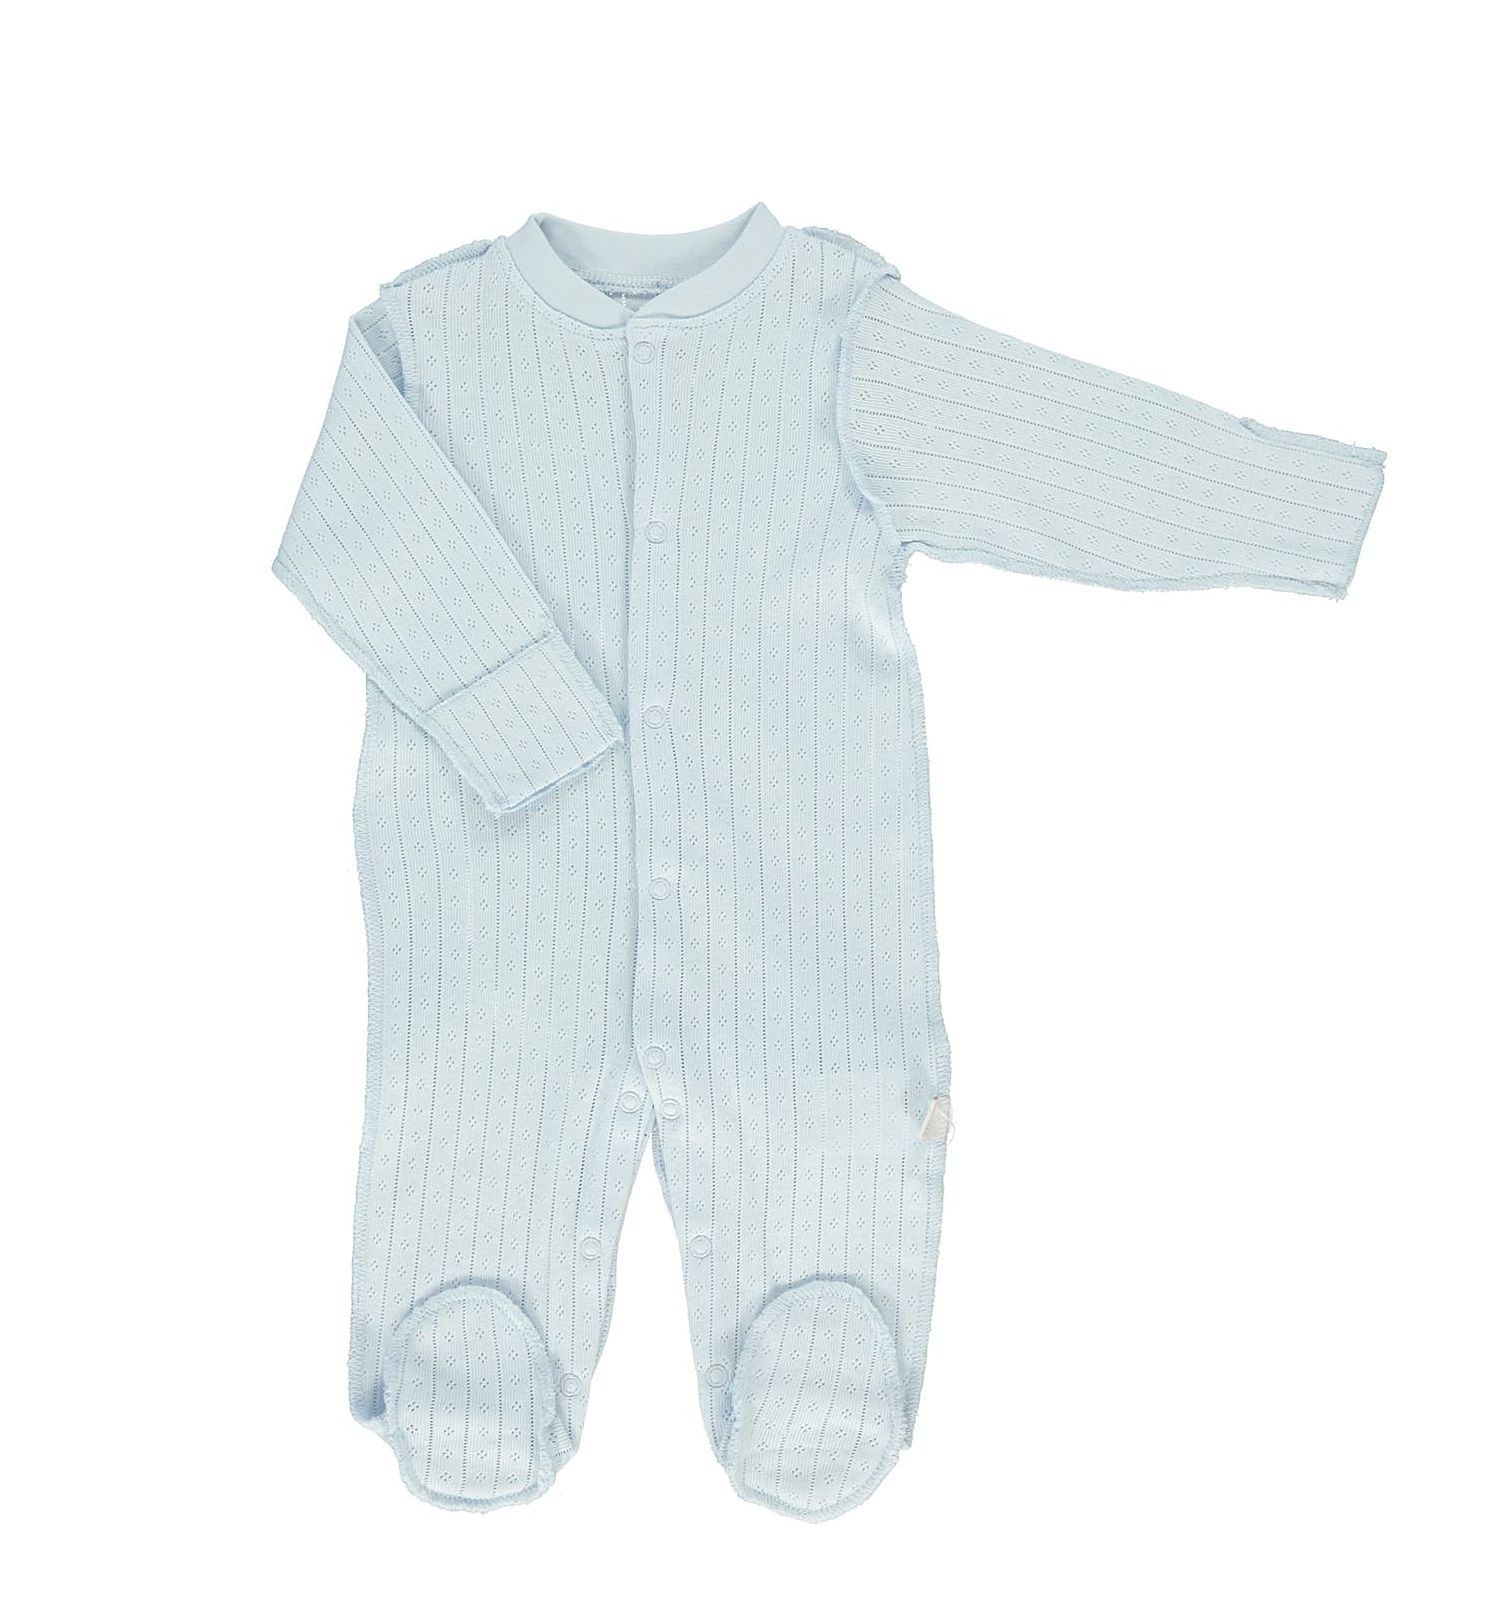 Παιδικά/Baby/Ρούχα/Φορμάκια-Κορμάκια SAM 0-13 - Βρεφικό ολόσωμο φορμάκι SAM 0-13 ΜΝΧ POINTEL γαλάζιο